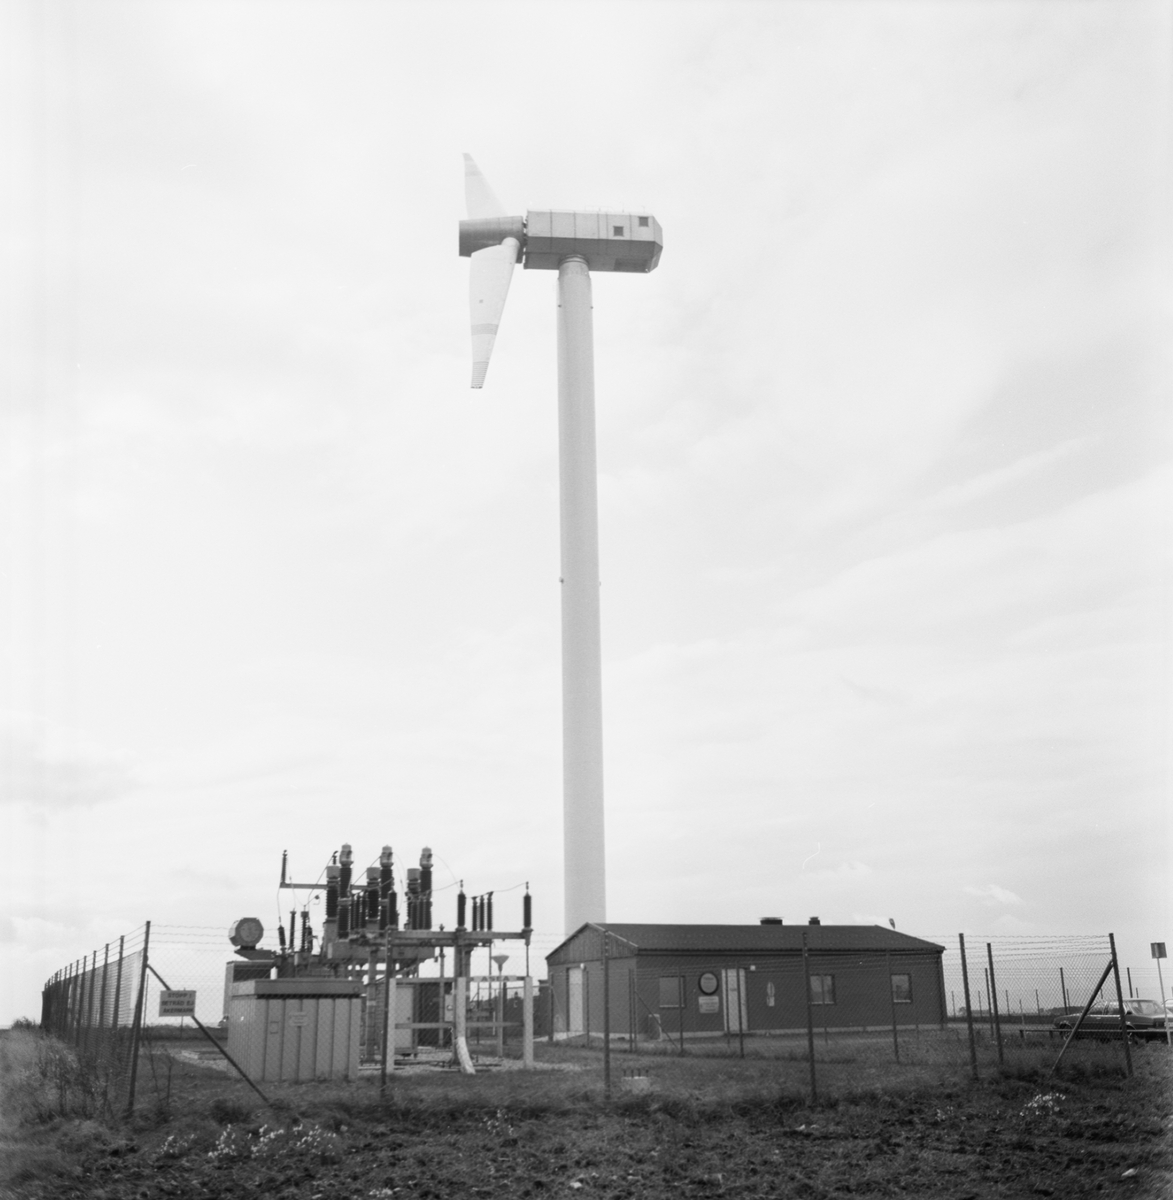 Övrigt: Foto datum: 22/9 1983
Byggnader och kranar
Exteriör av vindkraftverket i Maglarp.
Närmast identisk bild: V90352, ej skannad